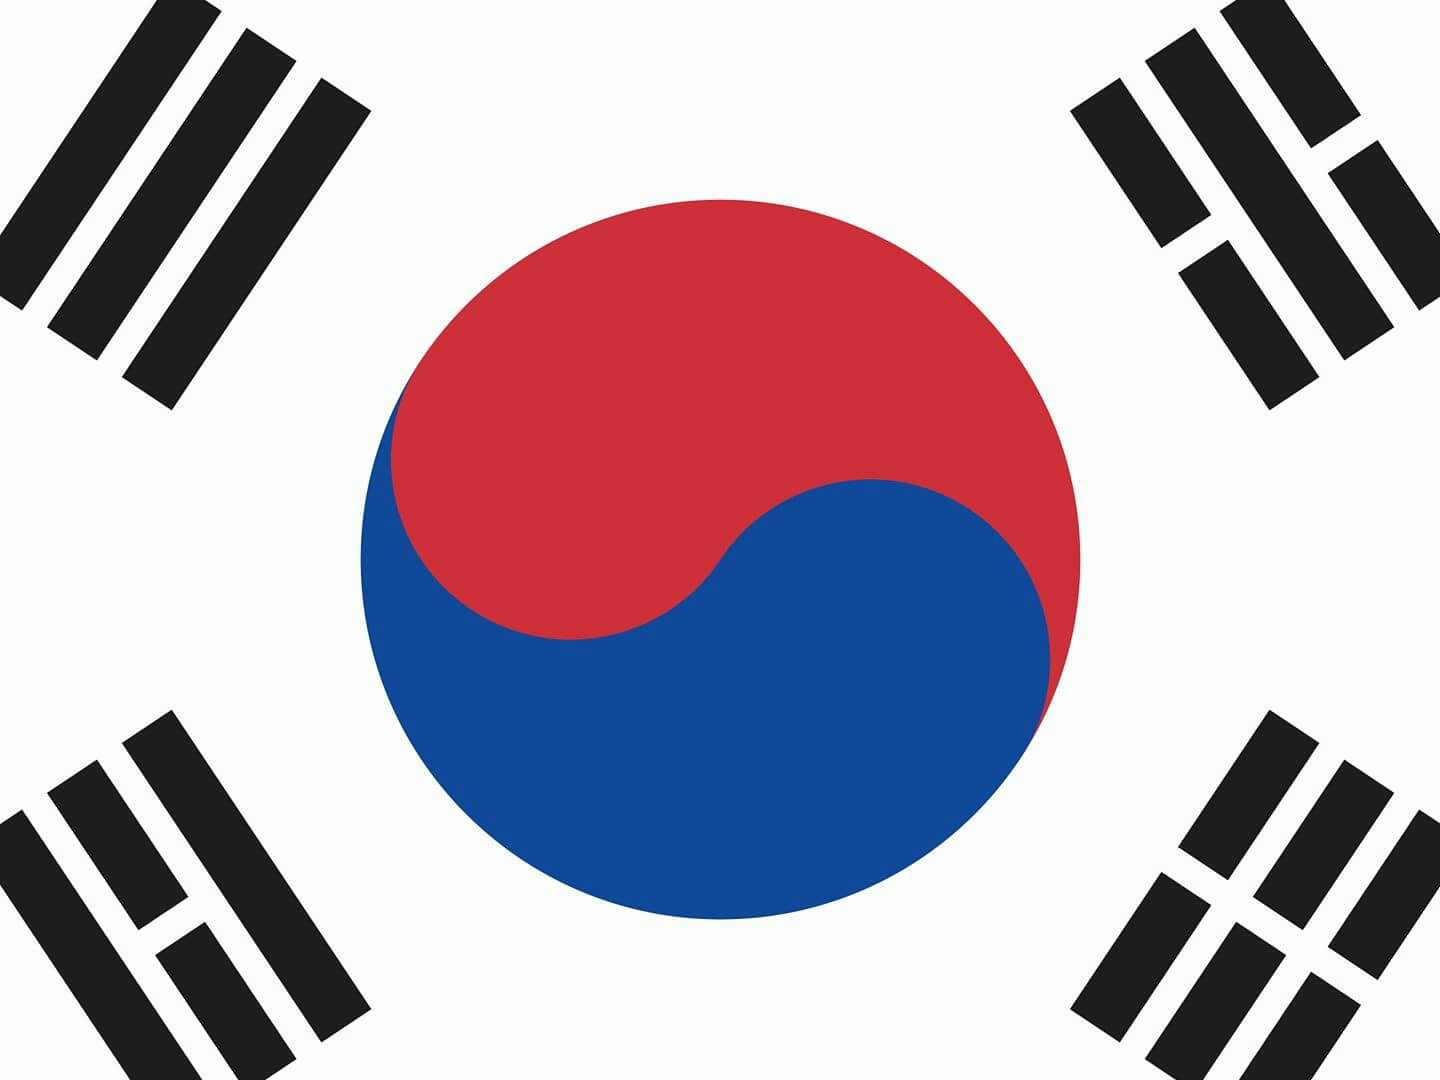 северная корея флаг и герб